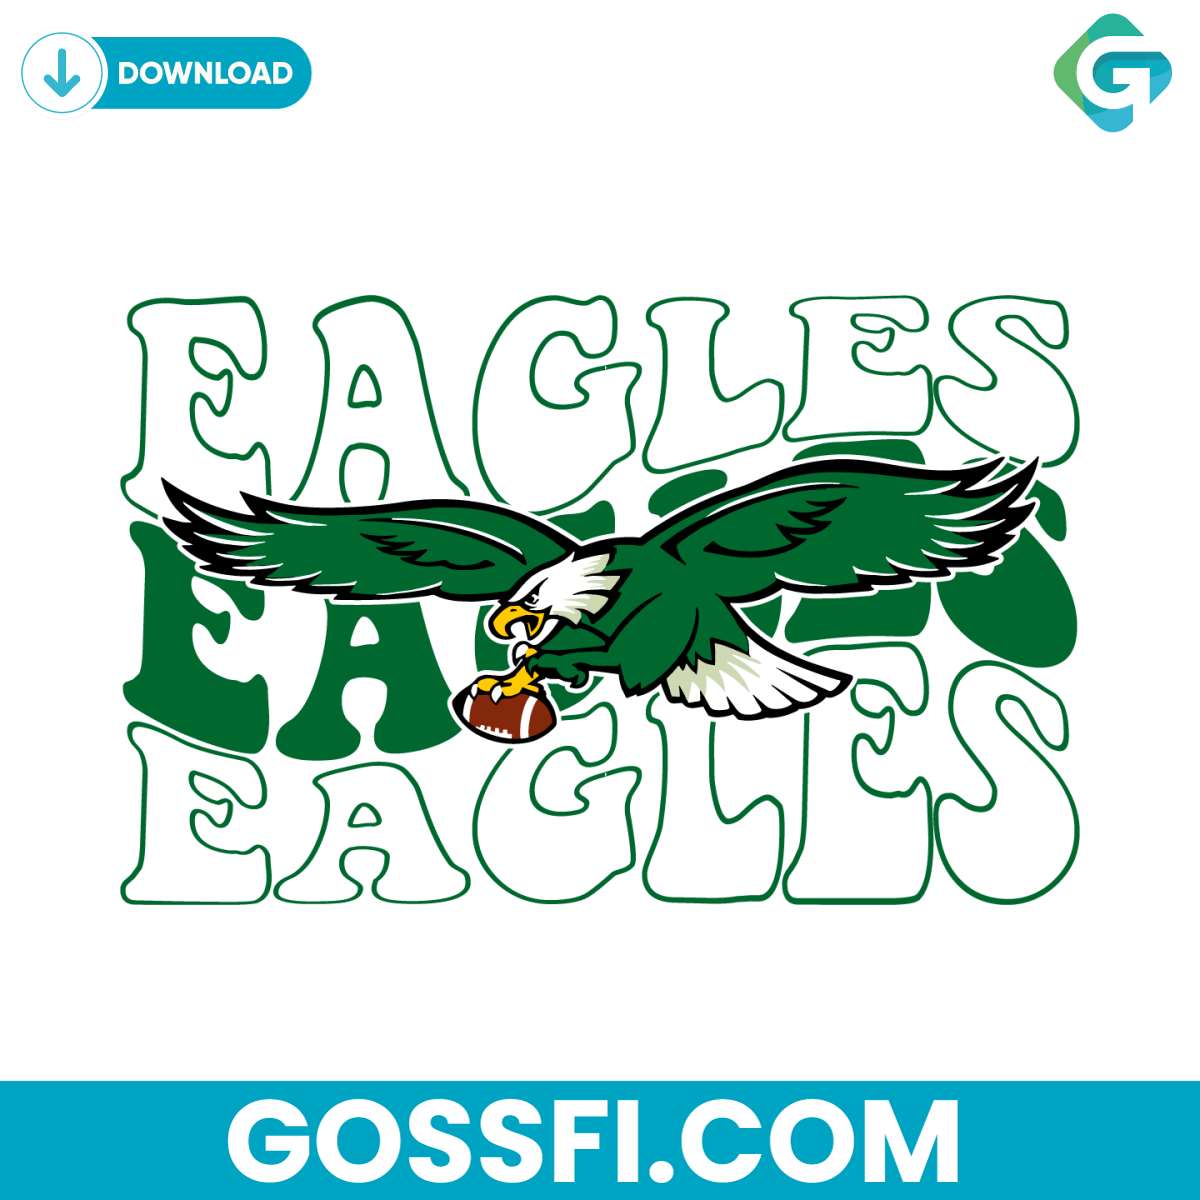 eagles-football-nfl-team-svg-cricut-digital-download